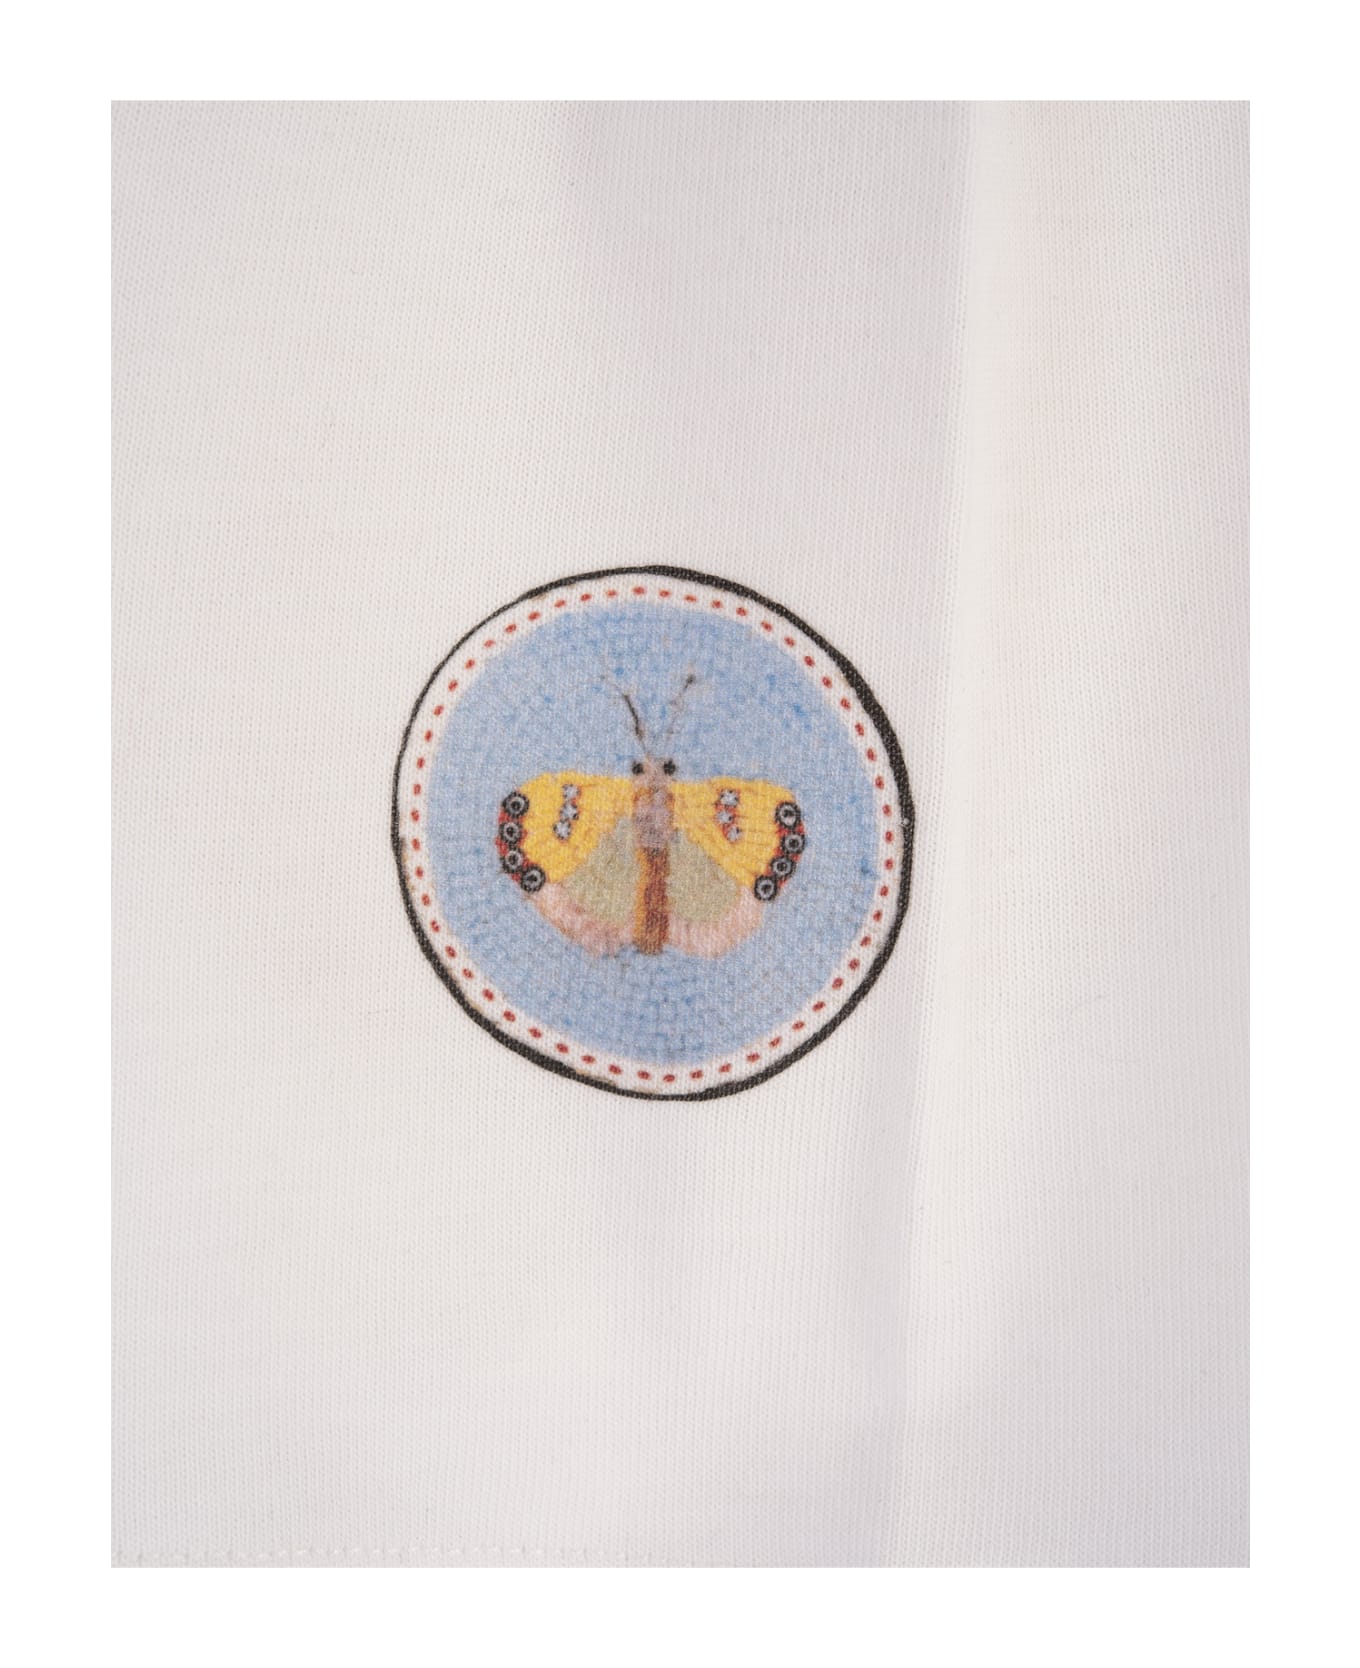 Giambattista Valli White Crop Top With Micromosaic Print - White Tシャツ